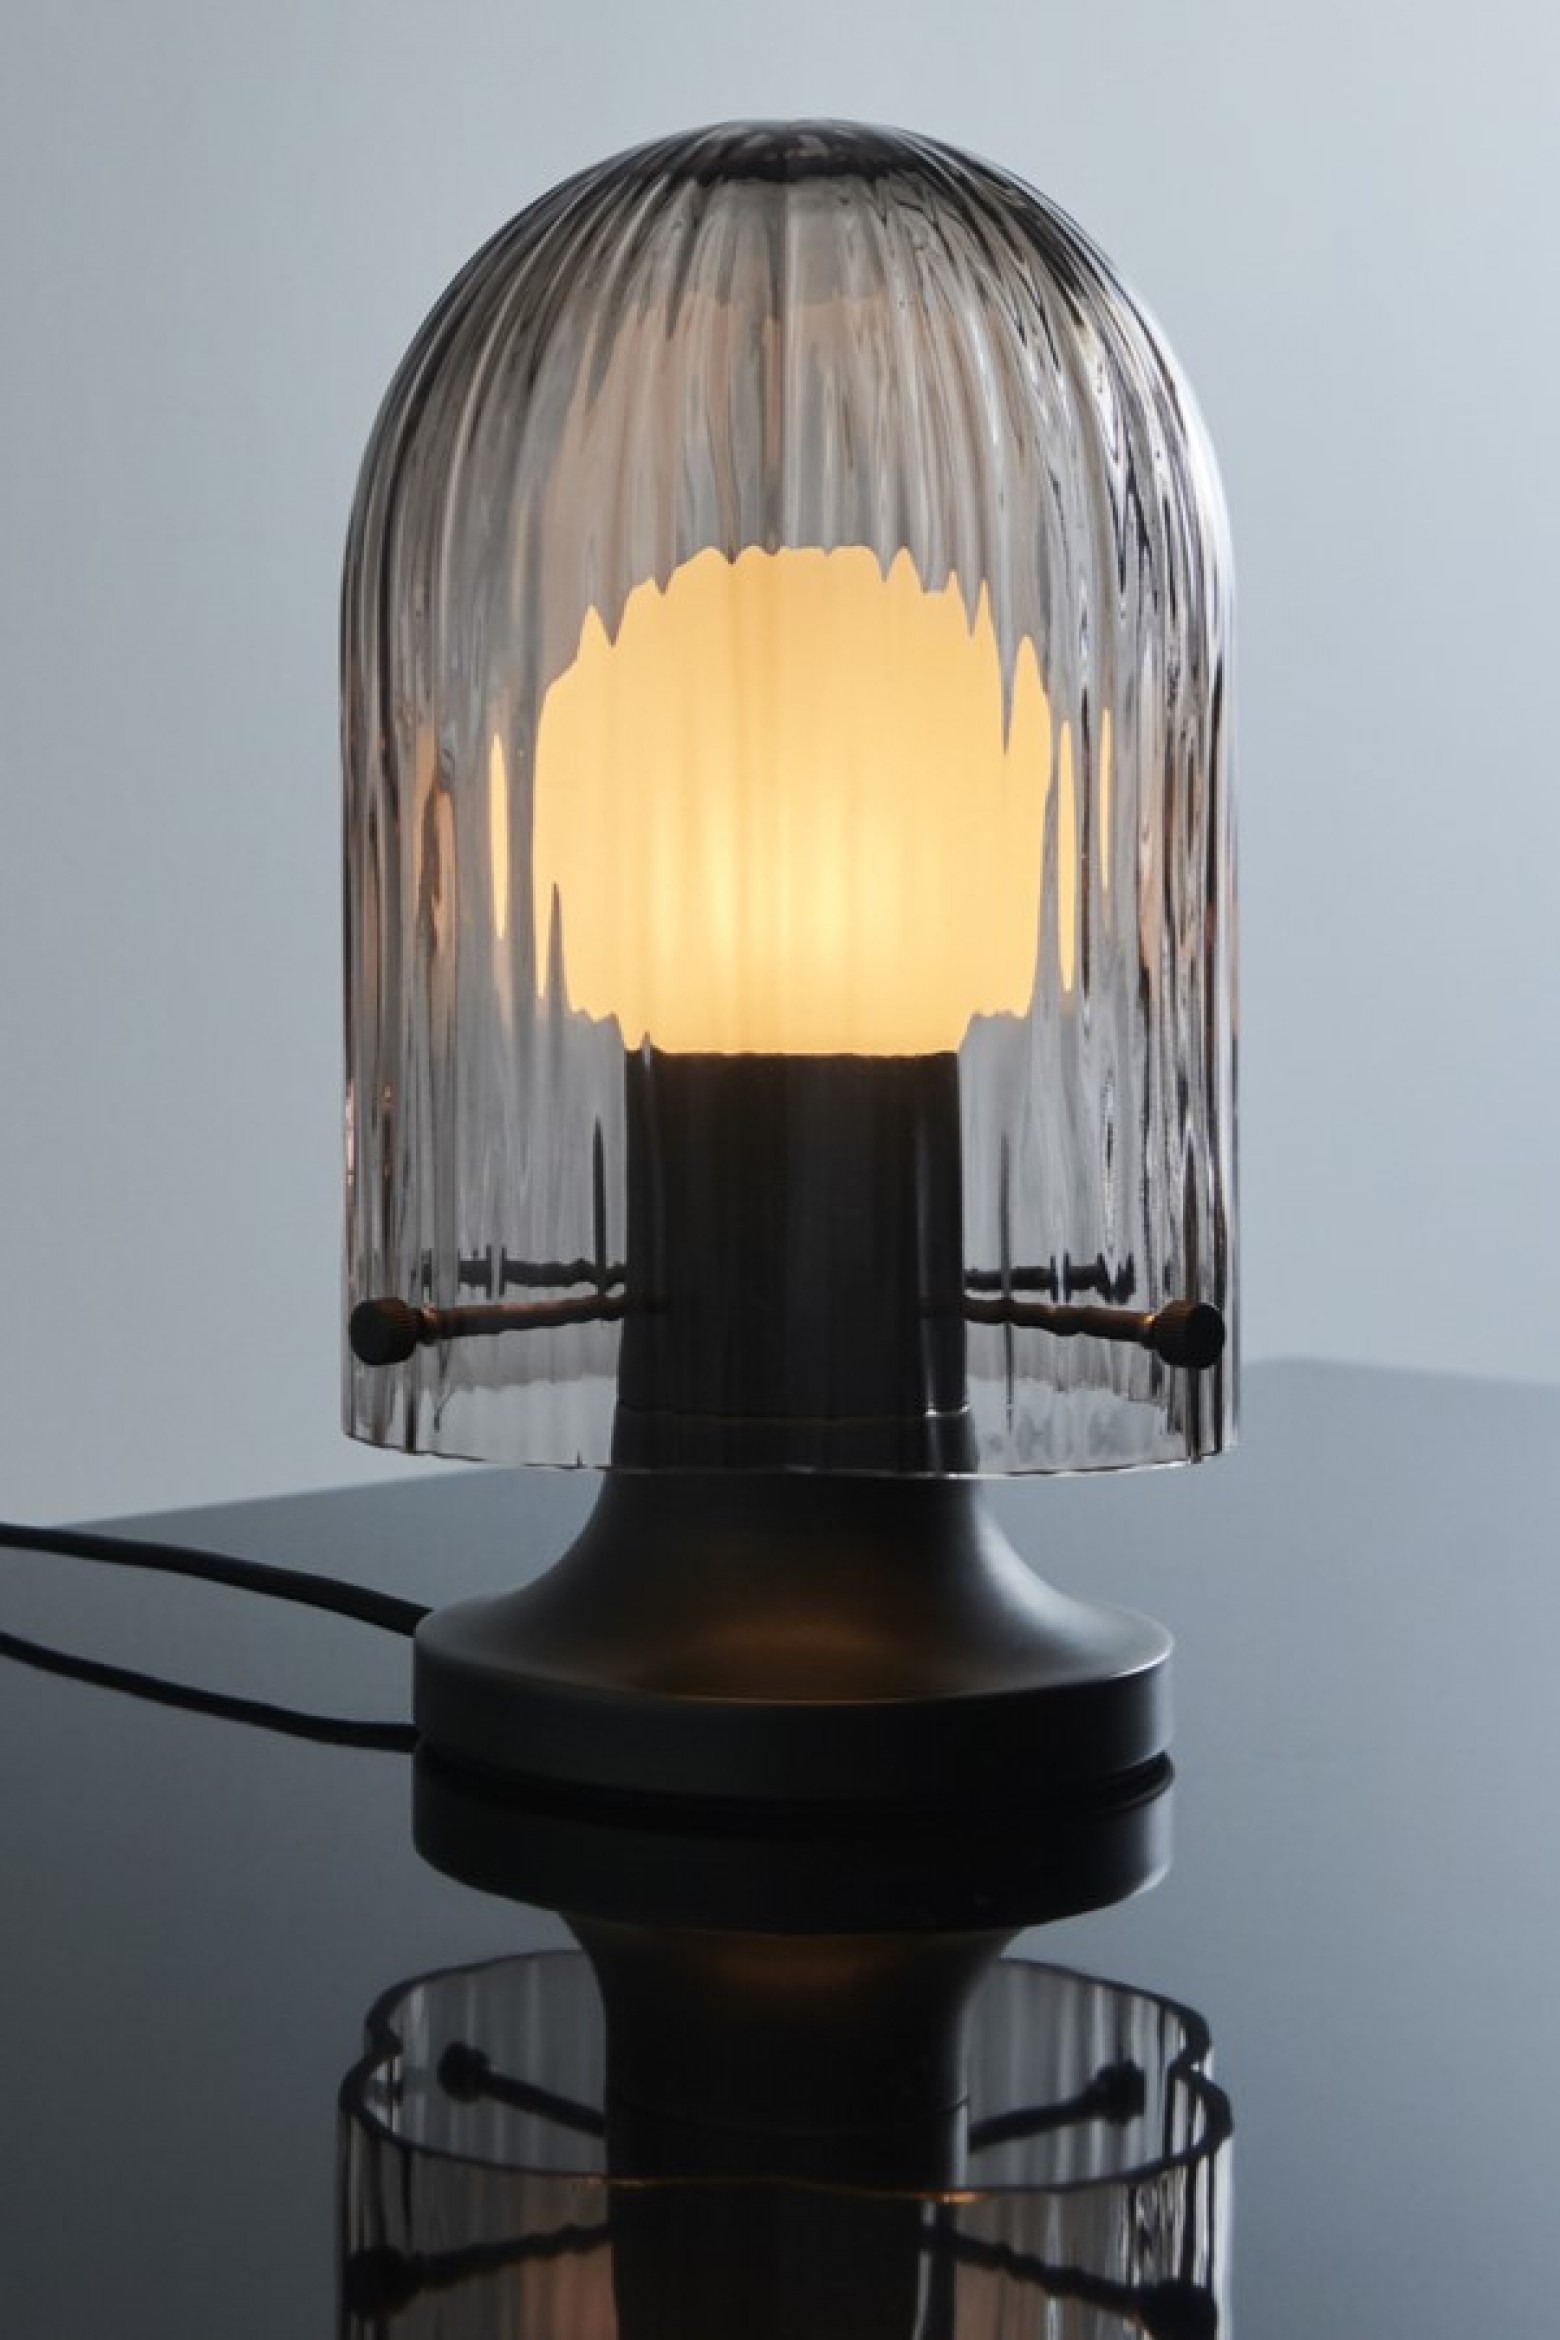 Lampe SEINE, Gubi, design Space Copenhagen, nouveauté 2022 Victors Design Agency